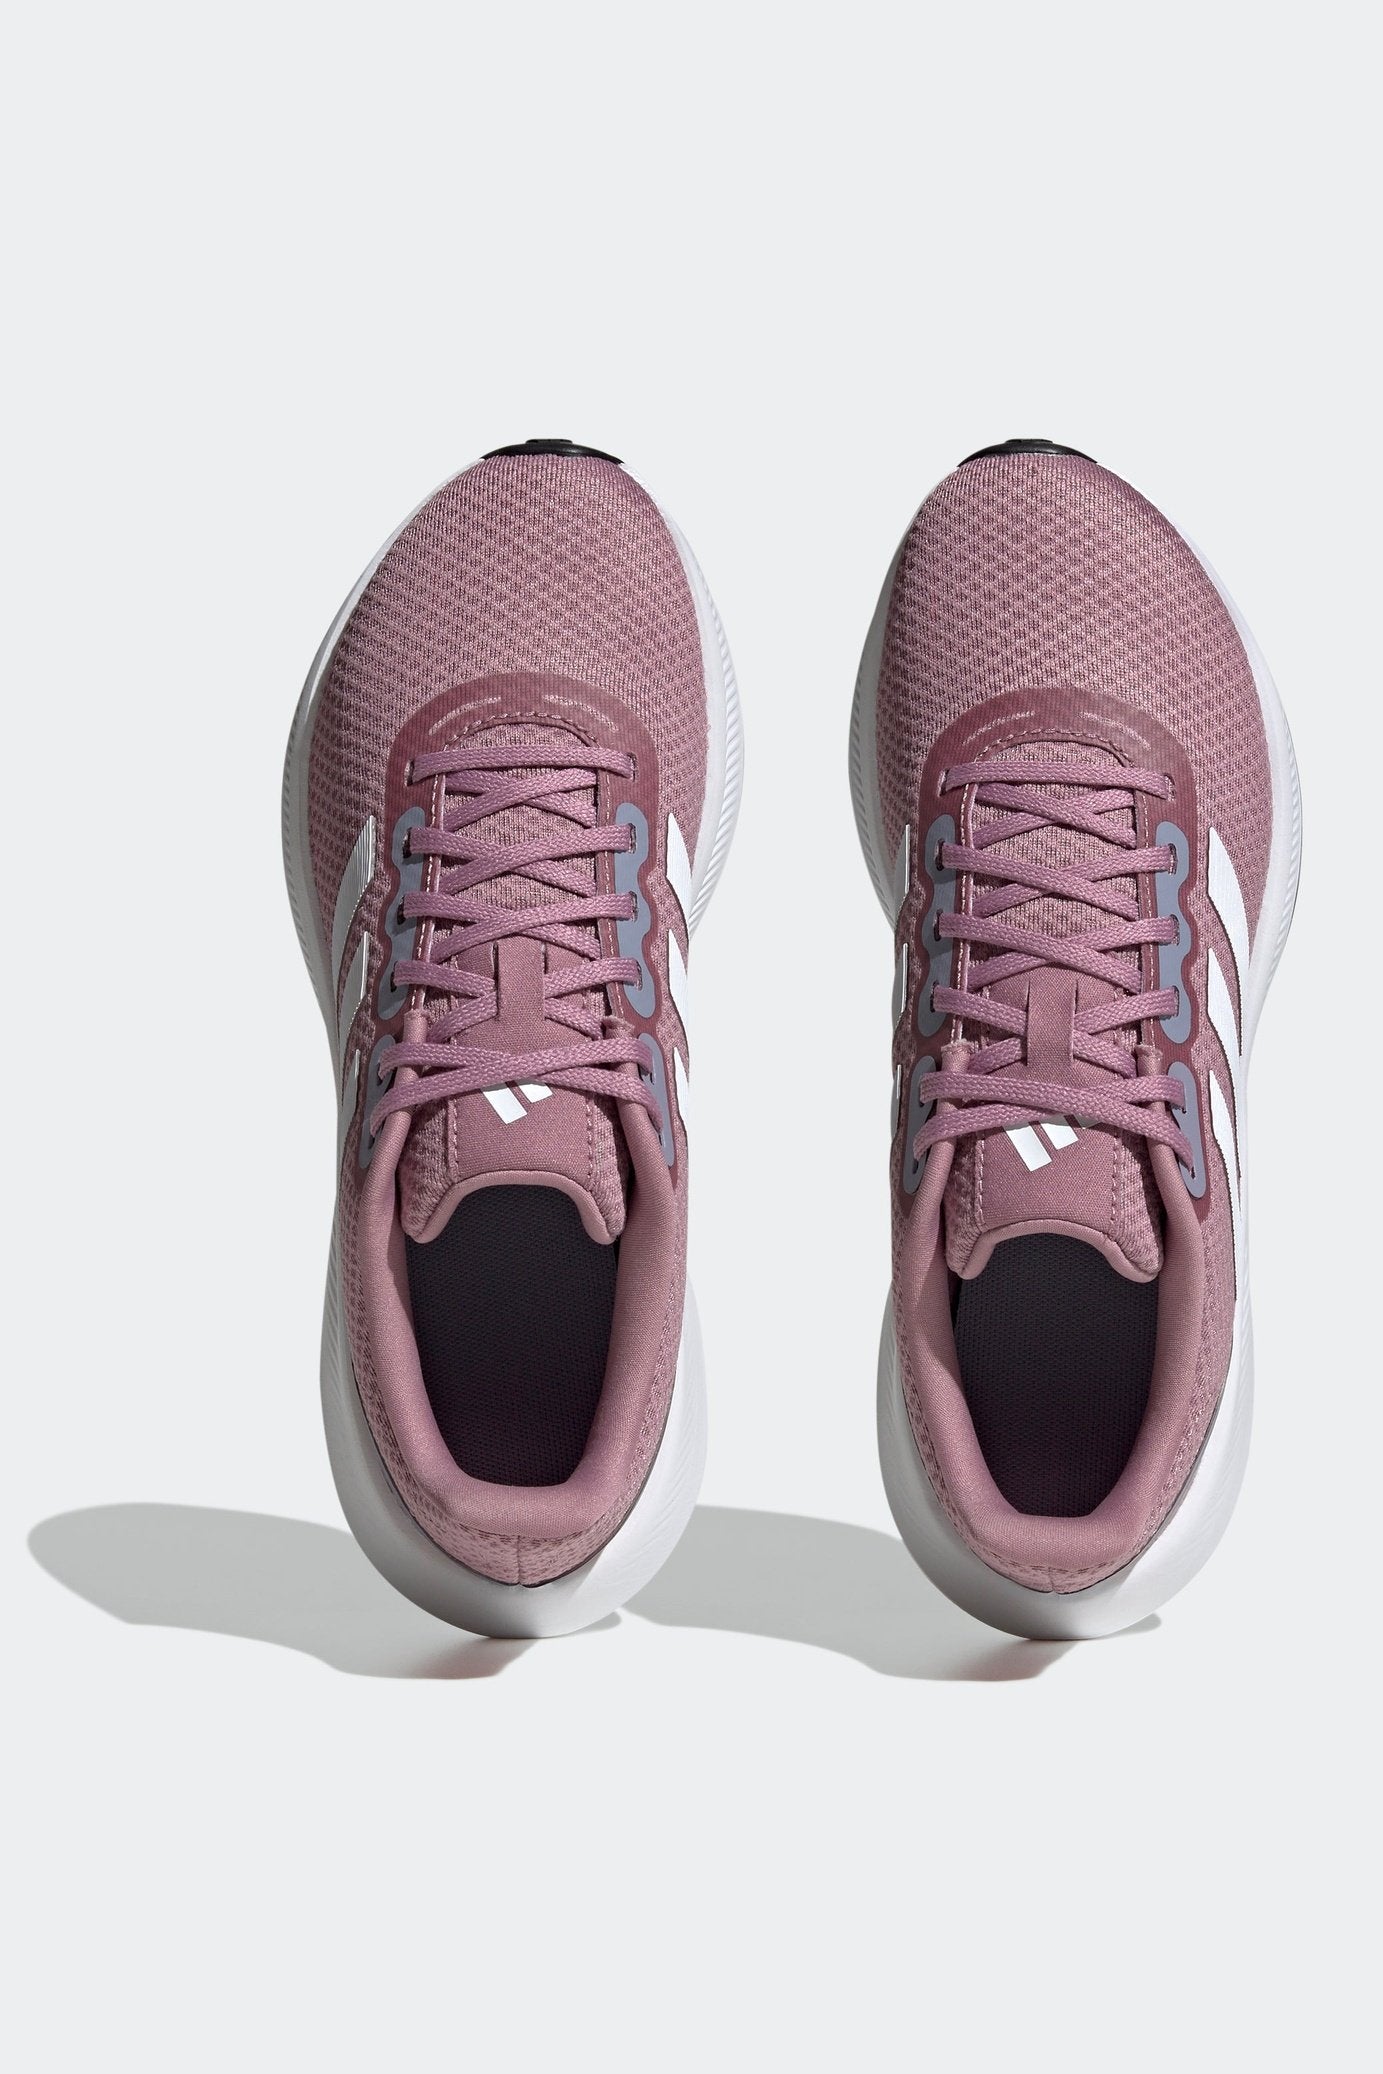 נעלי ספורט לנשים RUNFALCON 3.0 בצבע סגול לילך ולבן